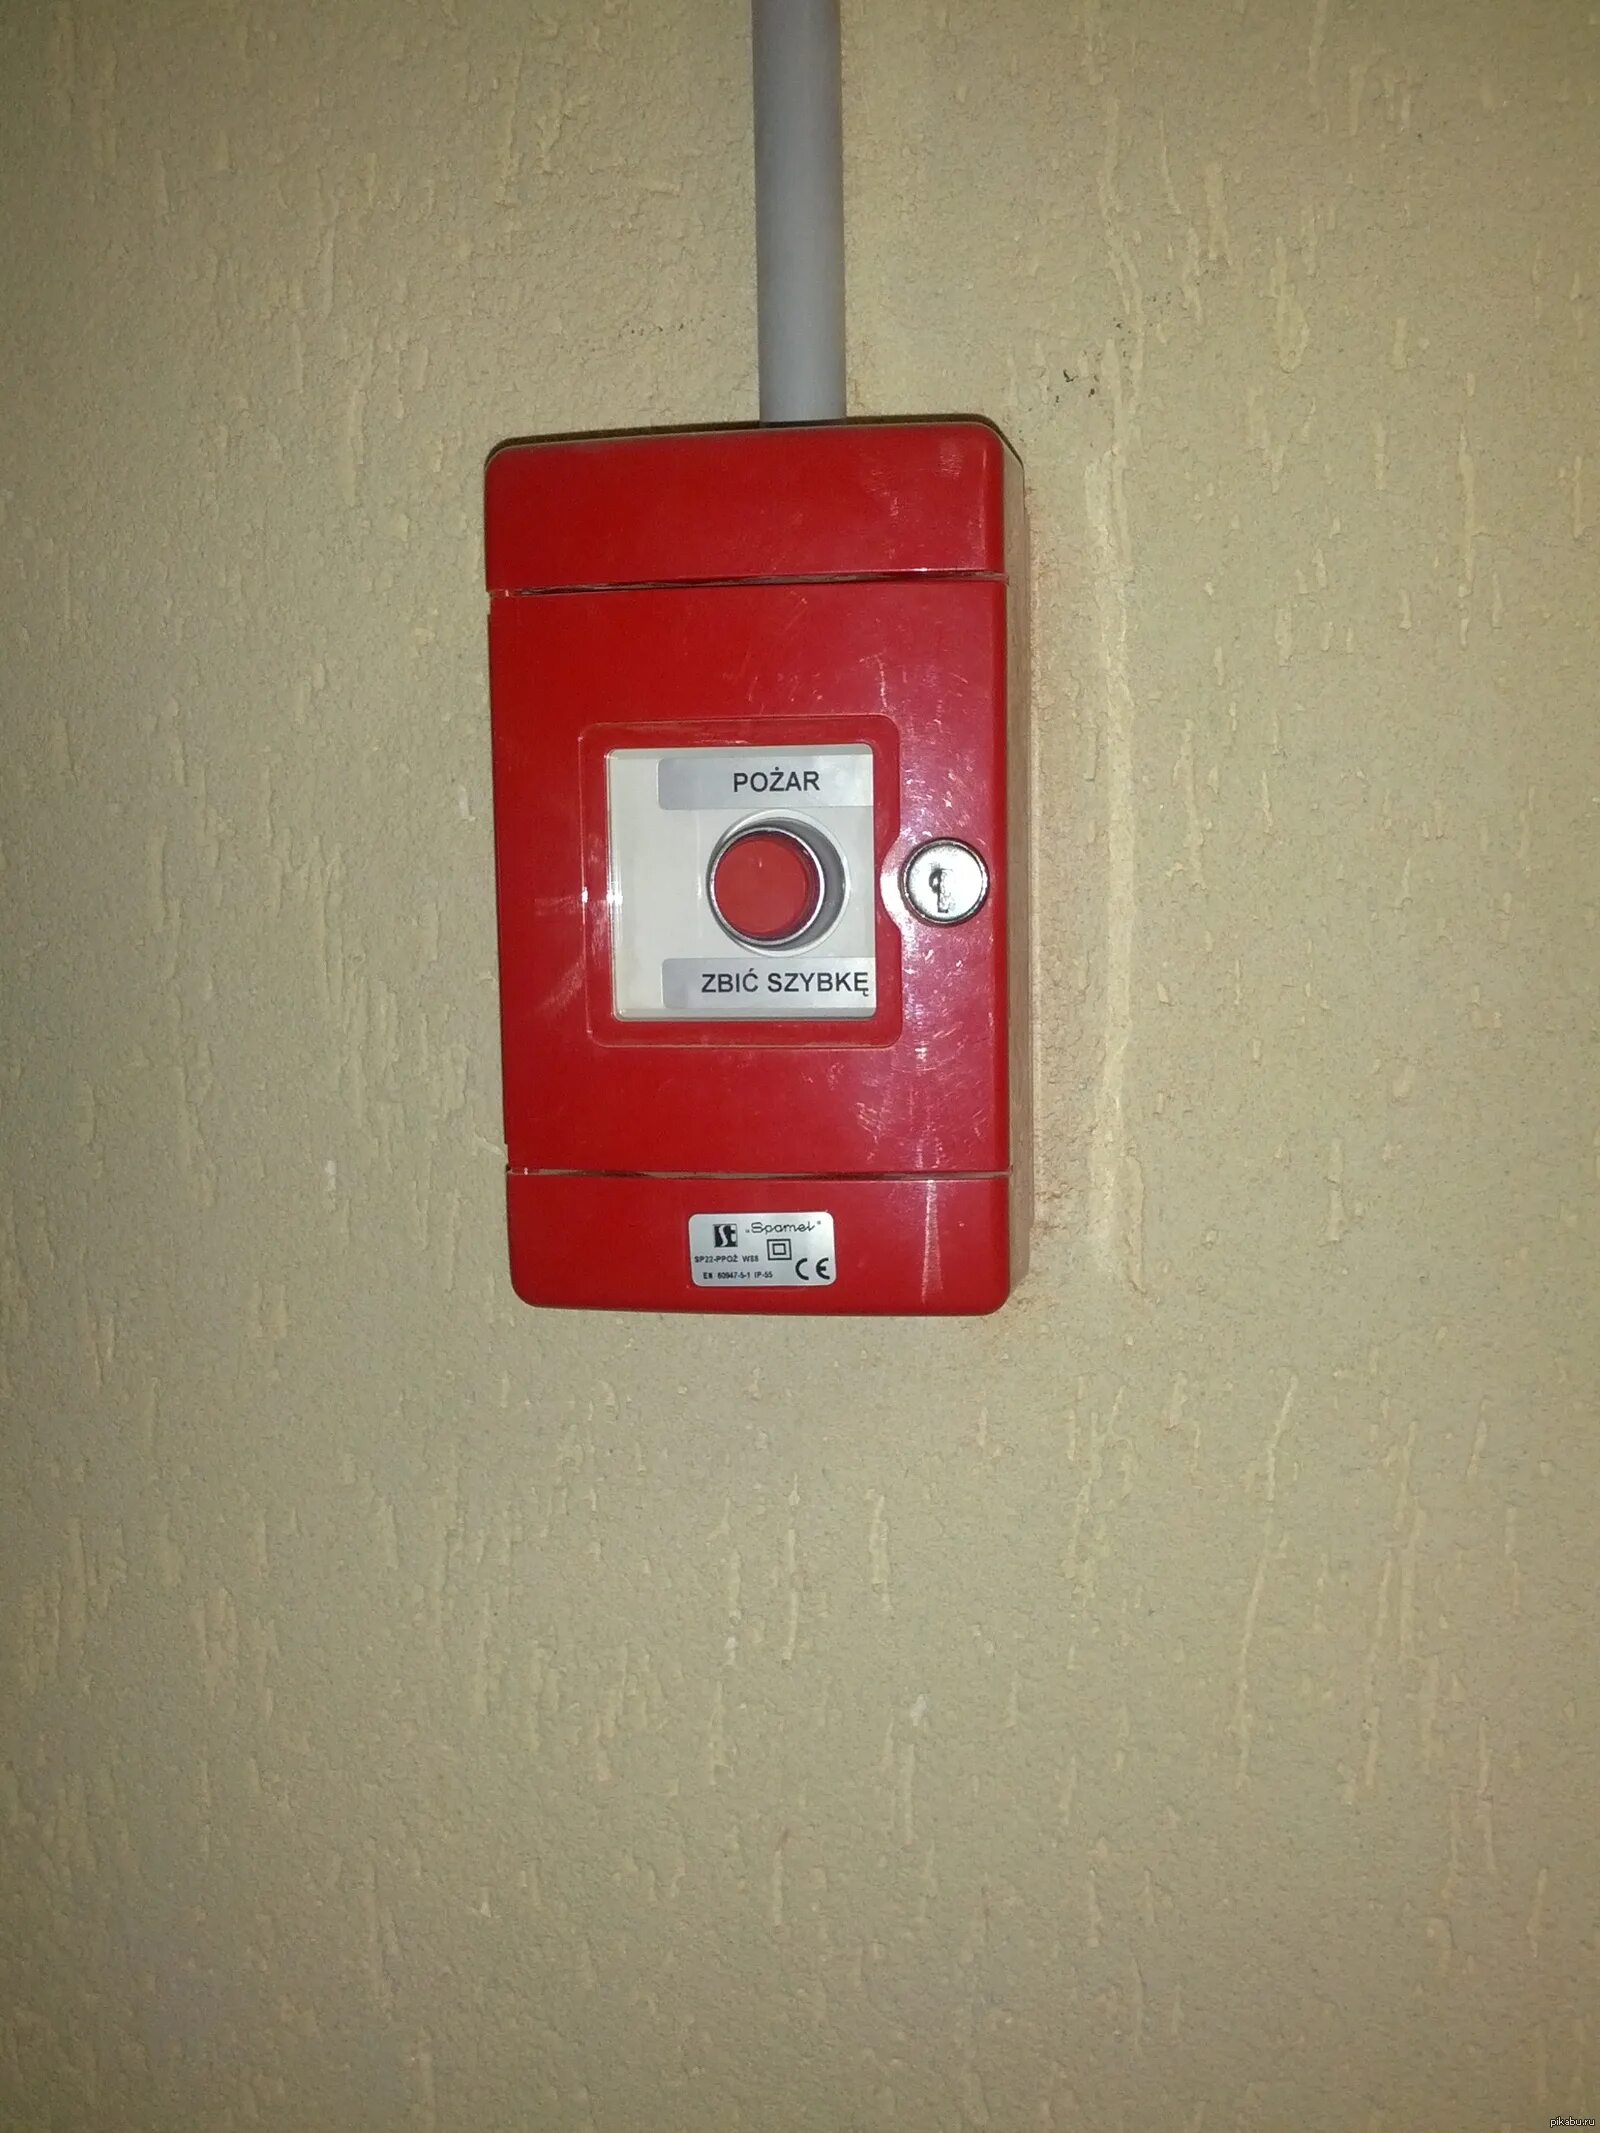 Пожарная кнопка. Кнопка пожарной тревоги. Тревожная кнопка пожарной сигнализации. Пожарная кнопка дизайнерская.